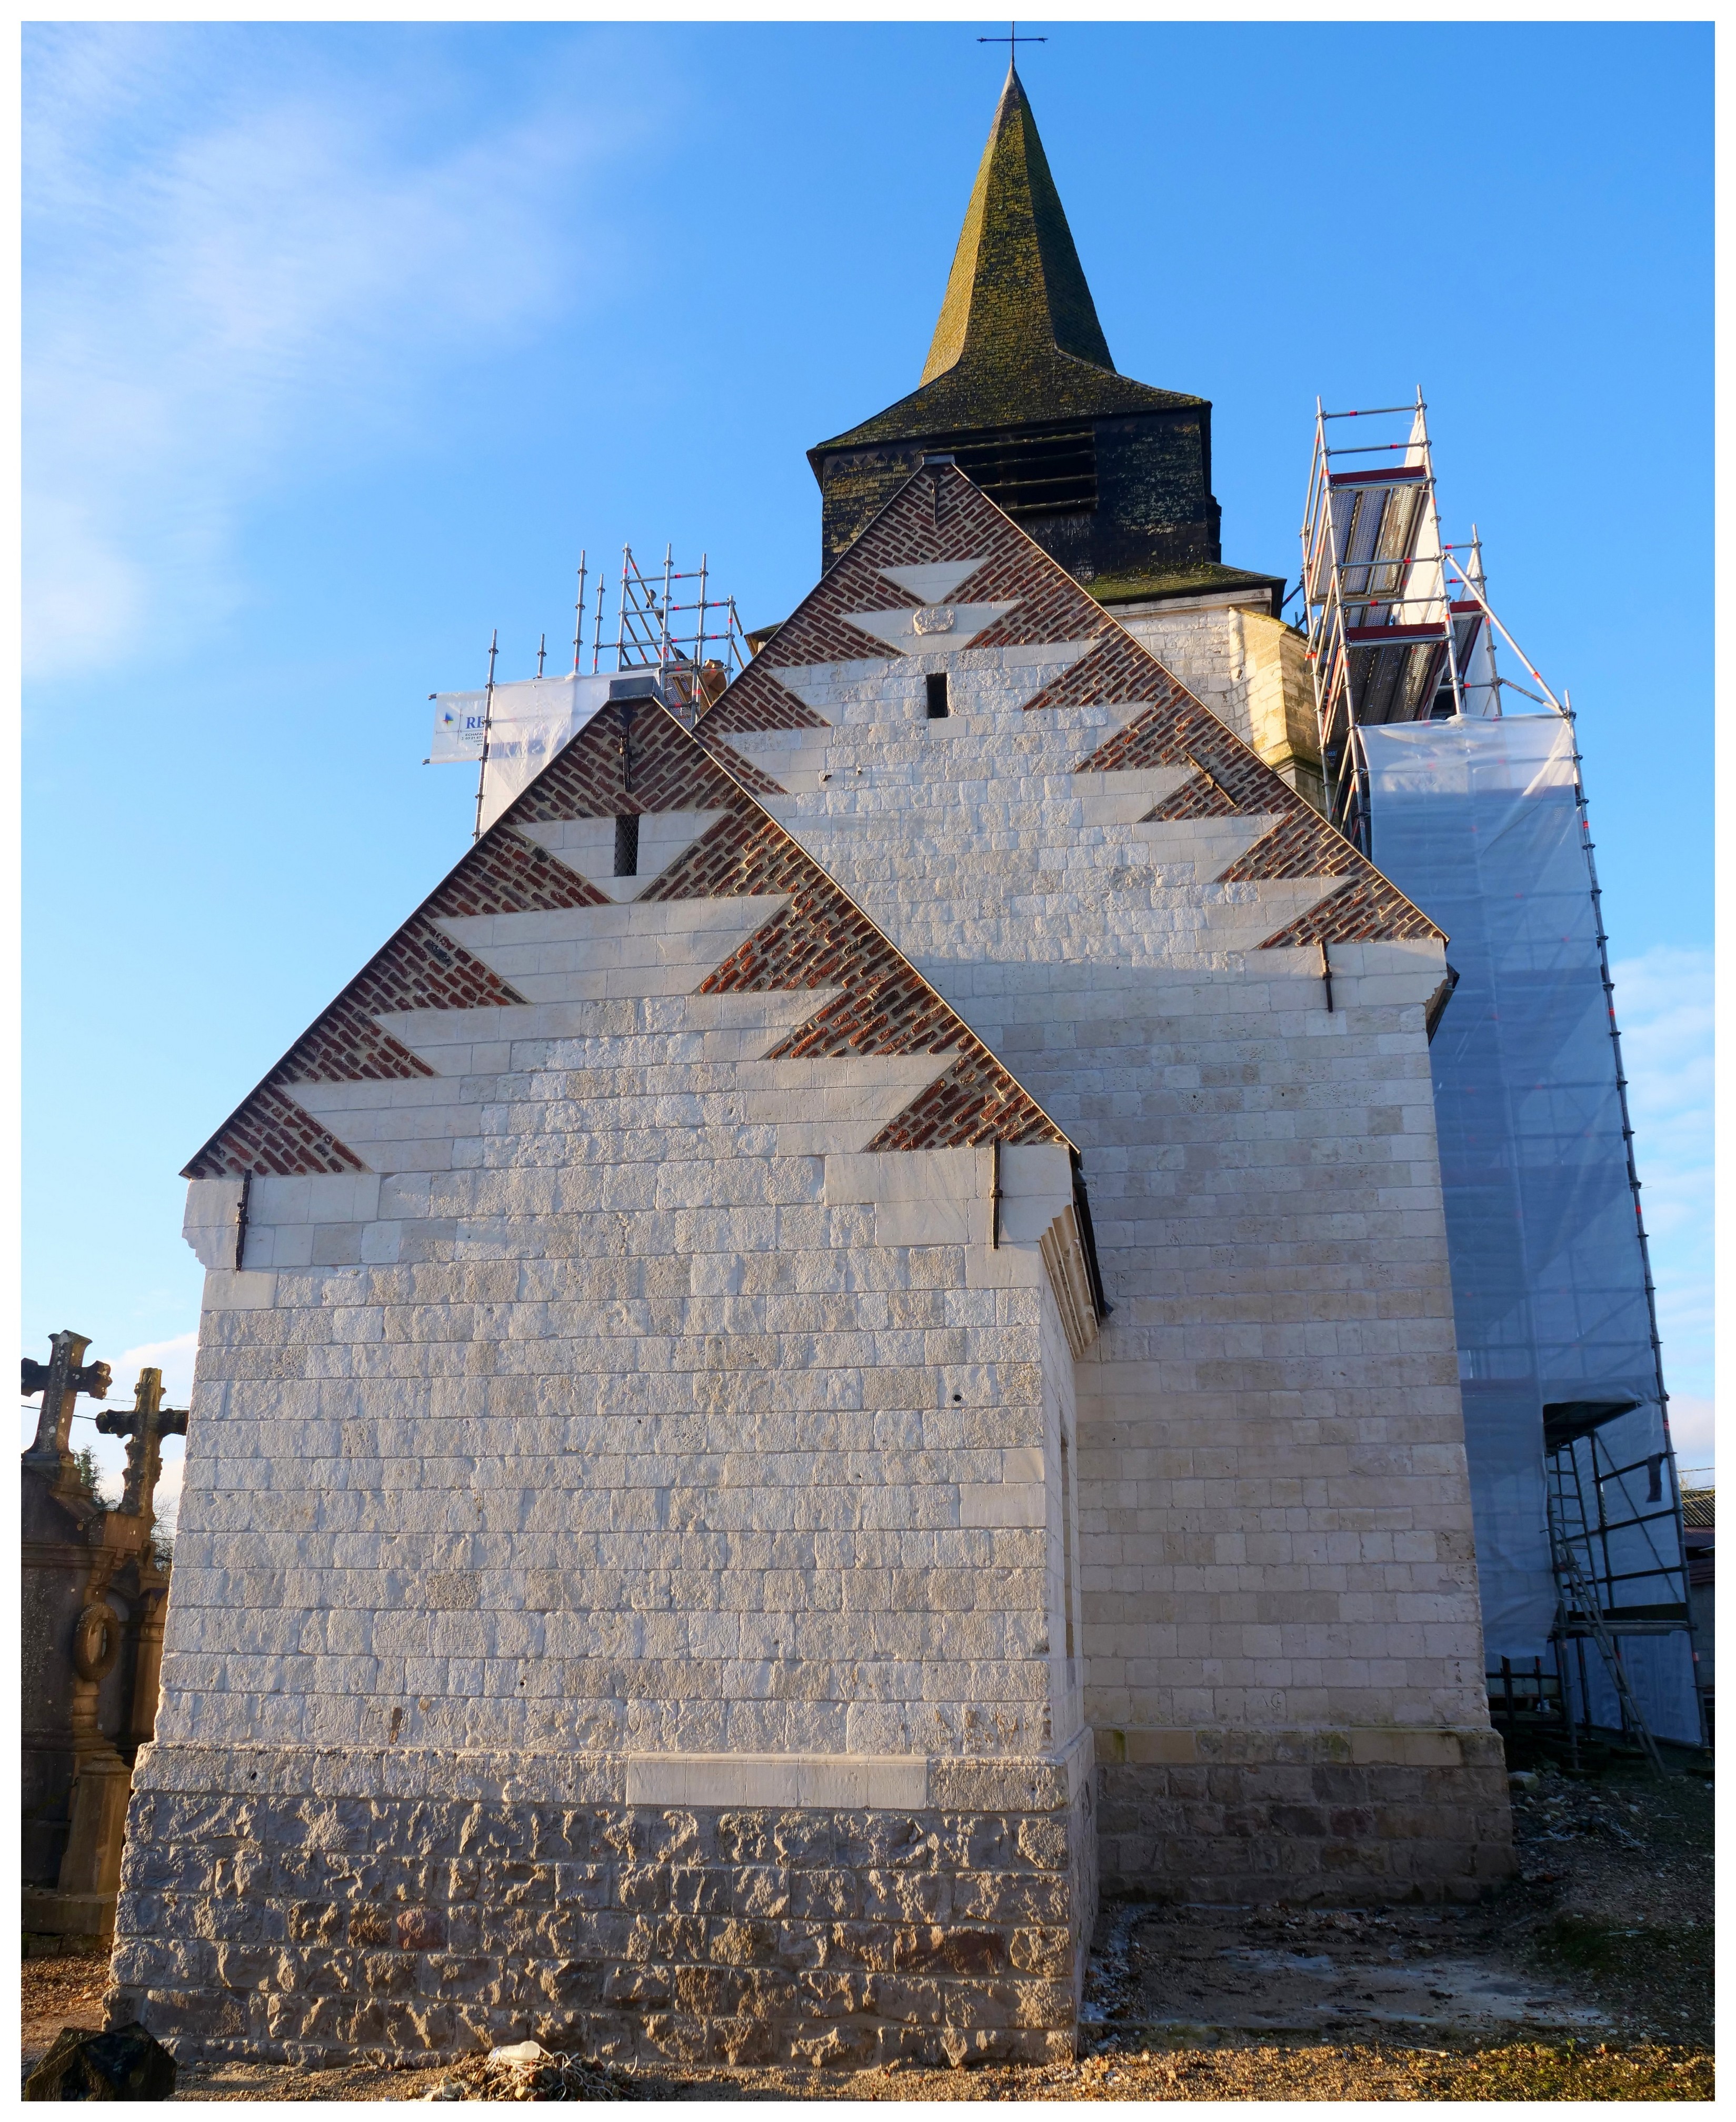  Restauration de l'église Saint-Martin